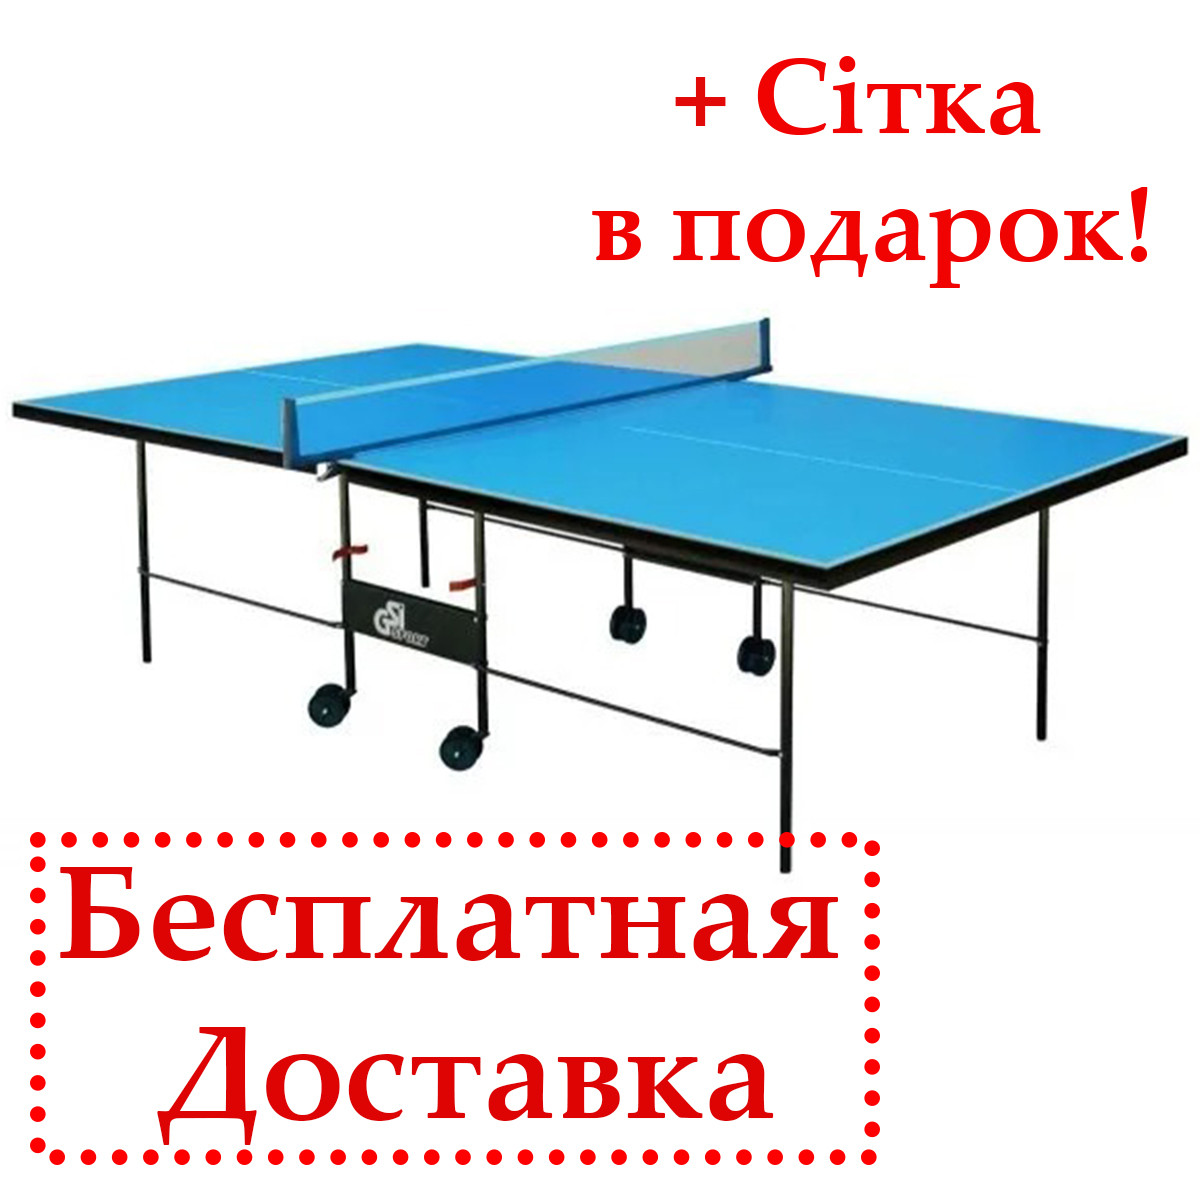 Теннисный стол всепогодный Athletic Outdoor Alu Line синий цвет, Всепогодный уличный теннисный стол